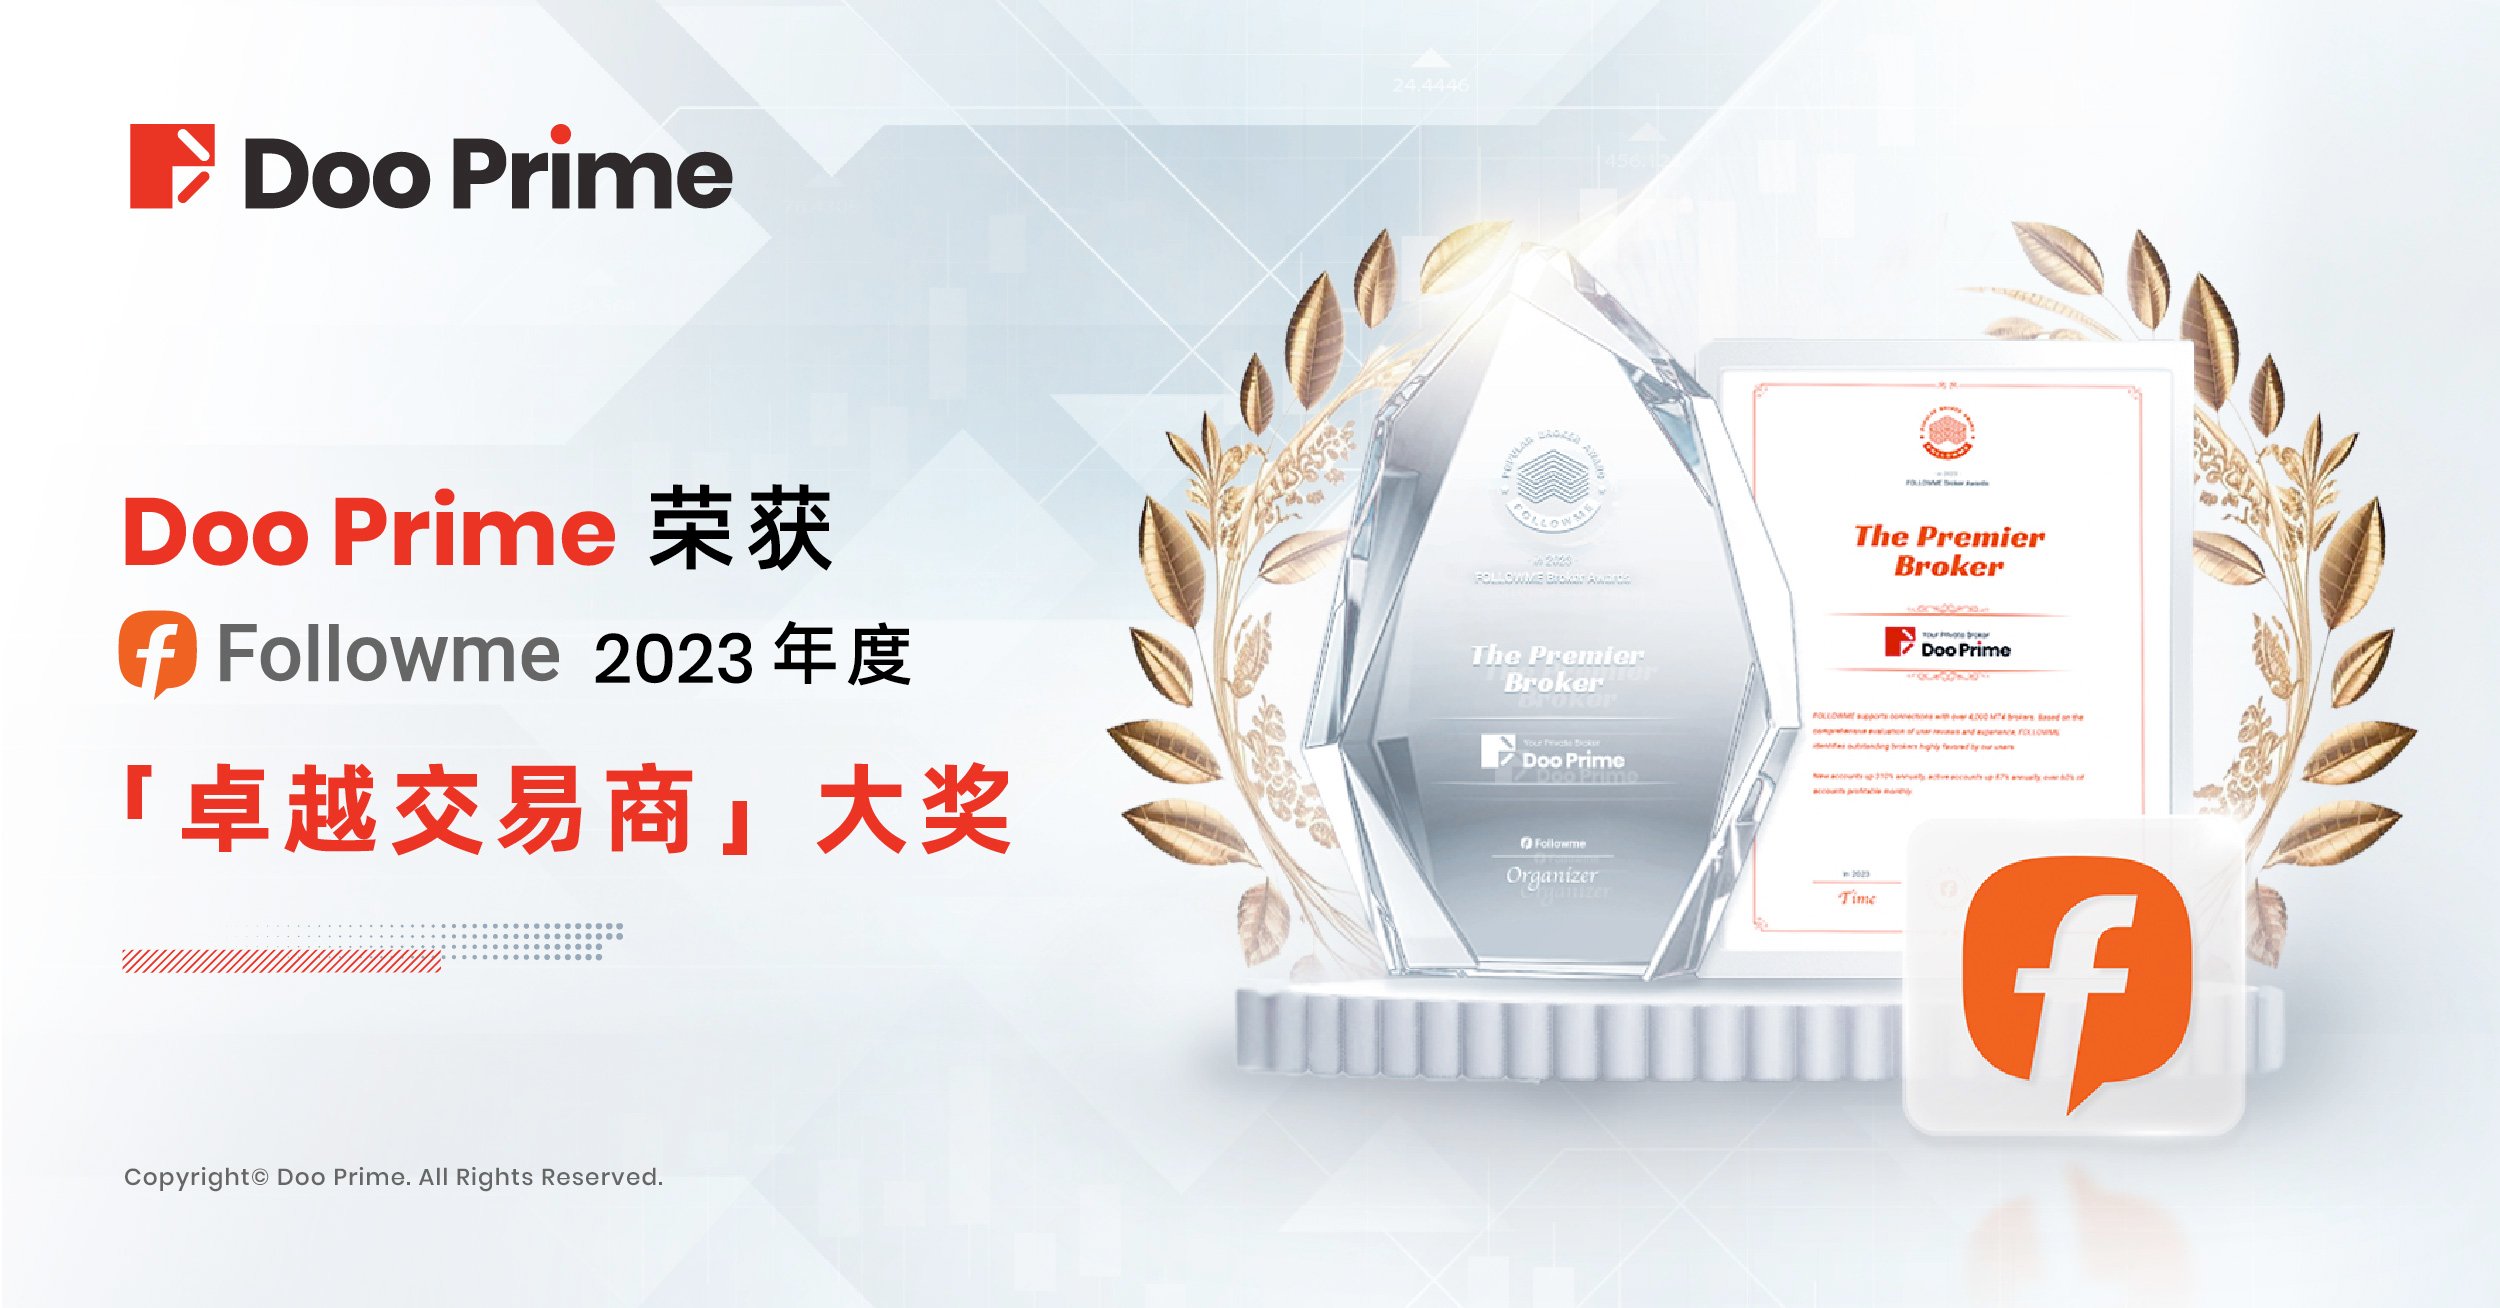 公司动态 | Doo Prime 荣获 2023 年 FOLLOWME“卓越交易商”大奖